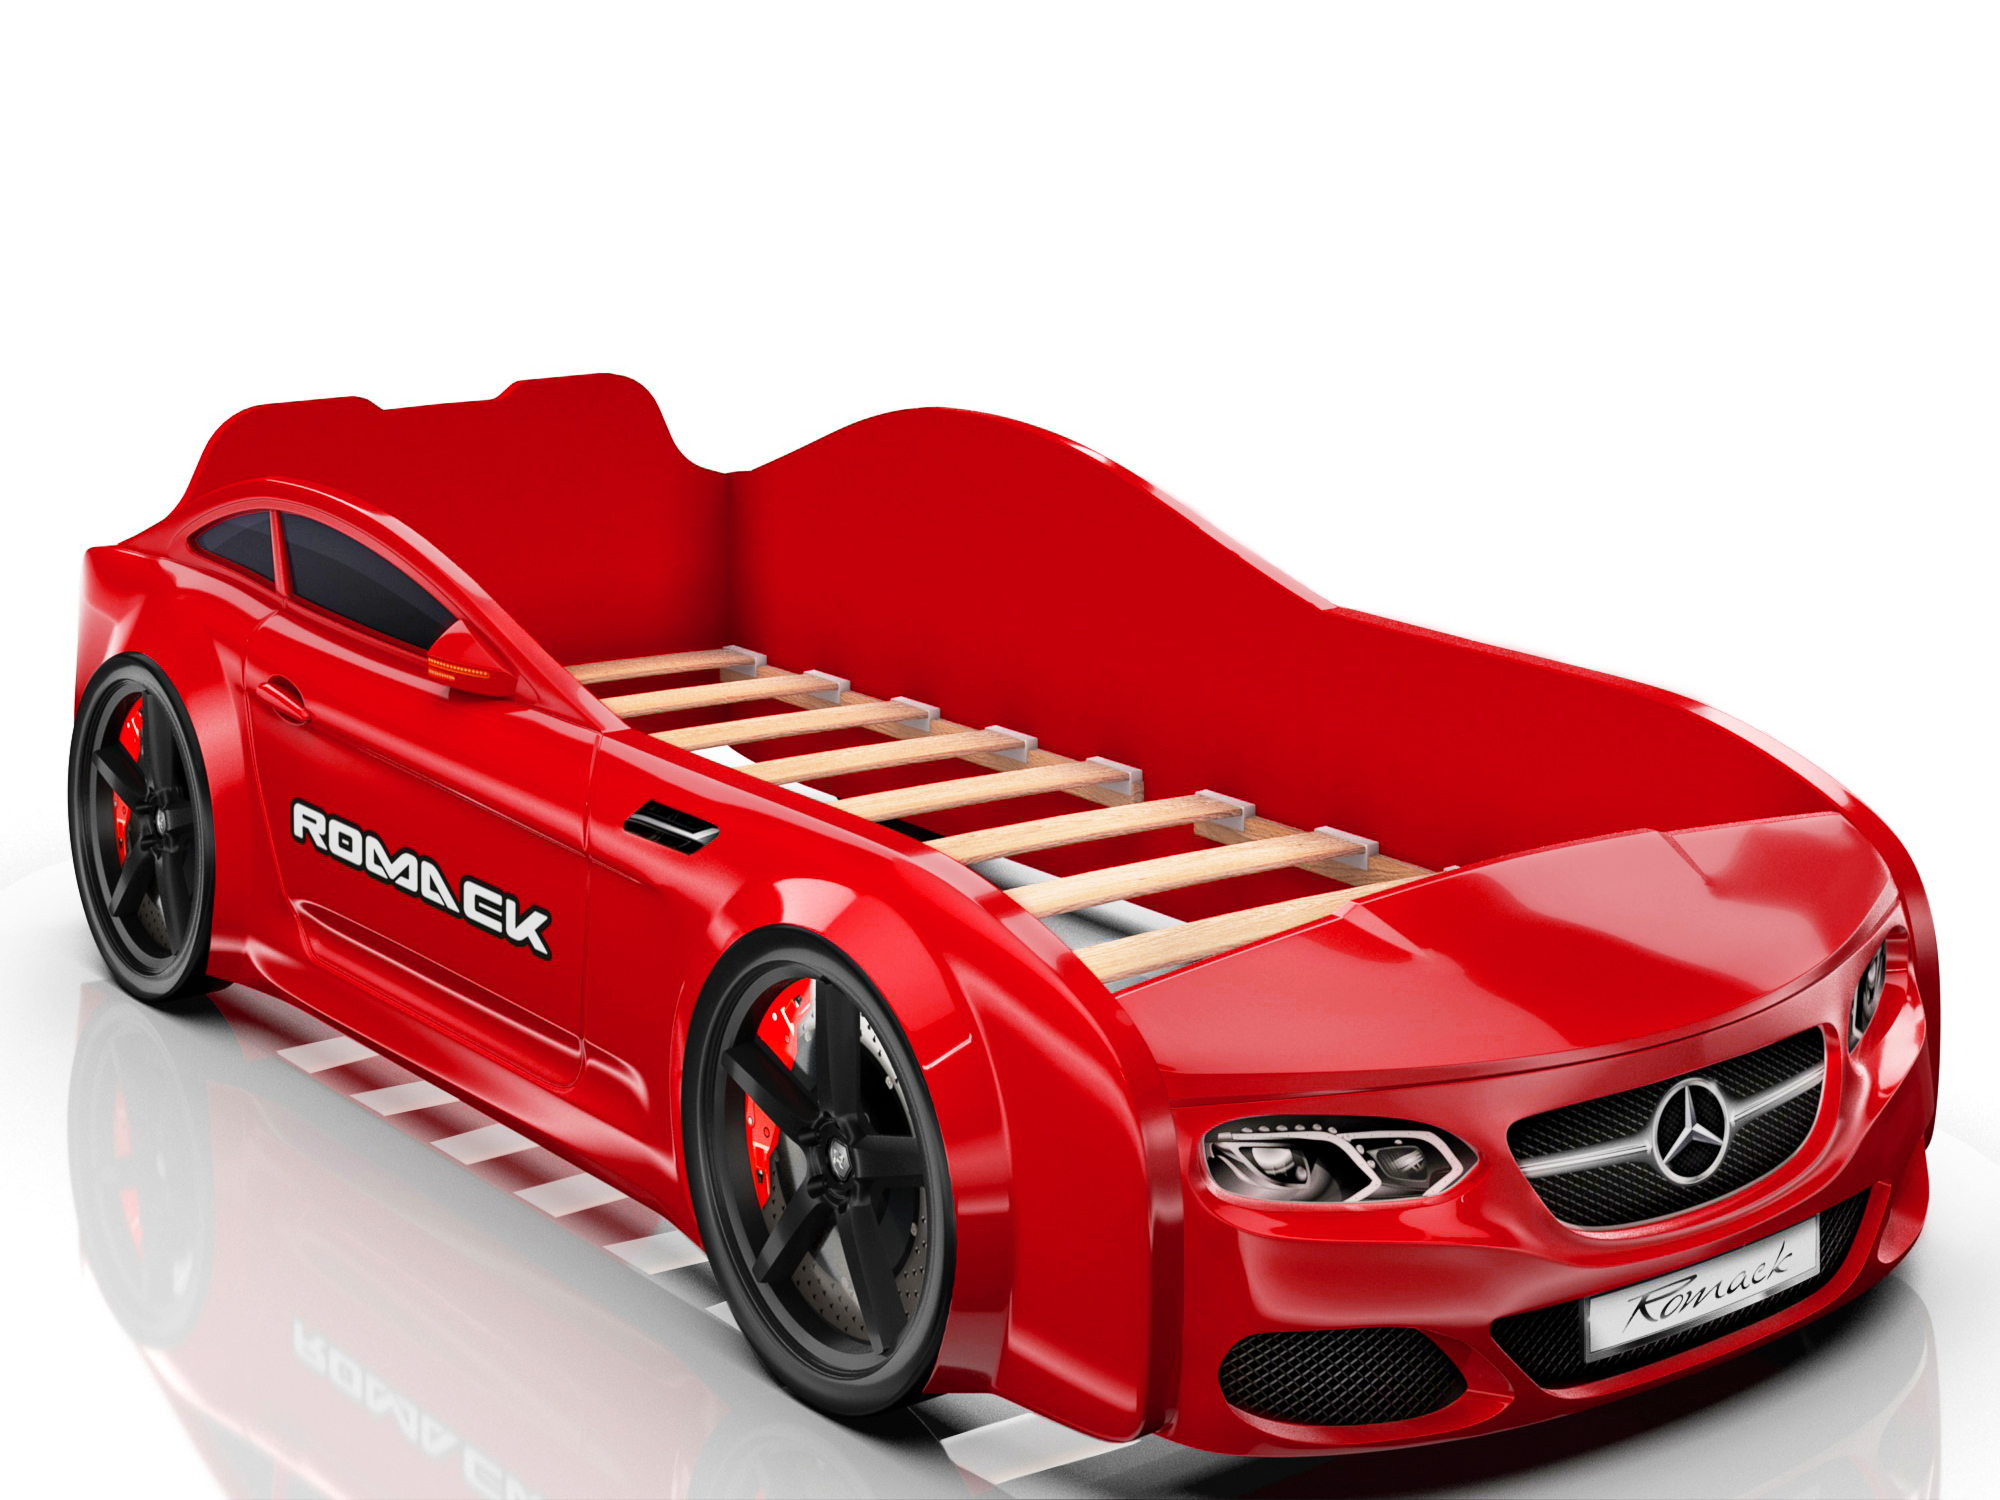 Купить машинки ярославль. Детская кровать машина Romack mebel real Audi a7 красная. Кровать машинка Костол энержт. Кровать Romack Leonardo. Красная машинка кровать Romack.